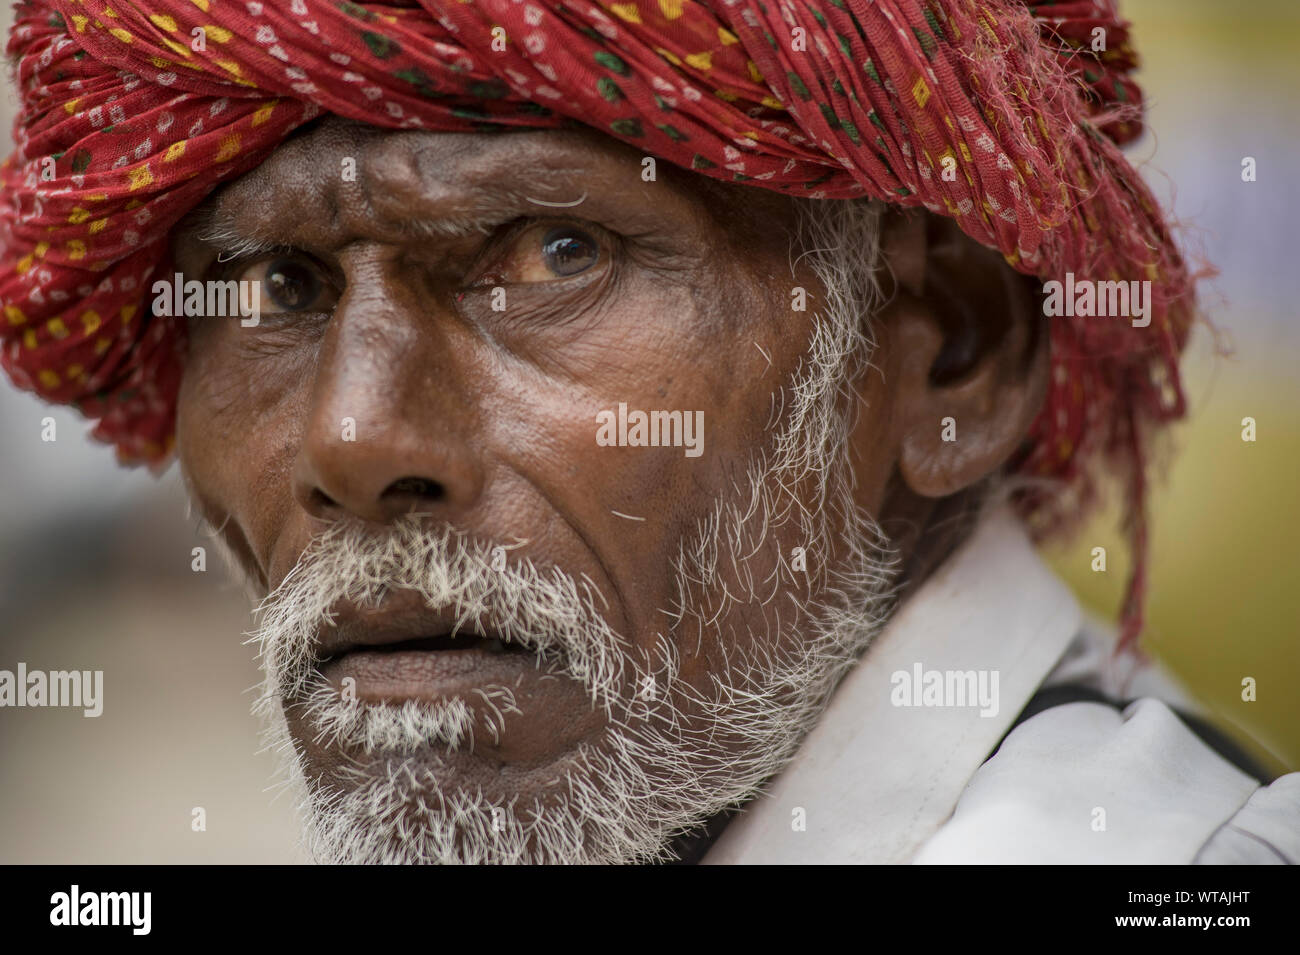 Uomo di Rajasthani che guarda lontano indossando un turbante rosso Foto Stock